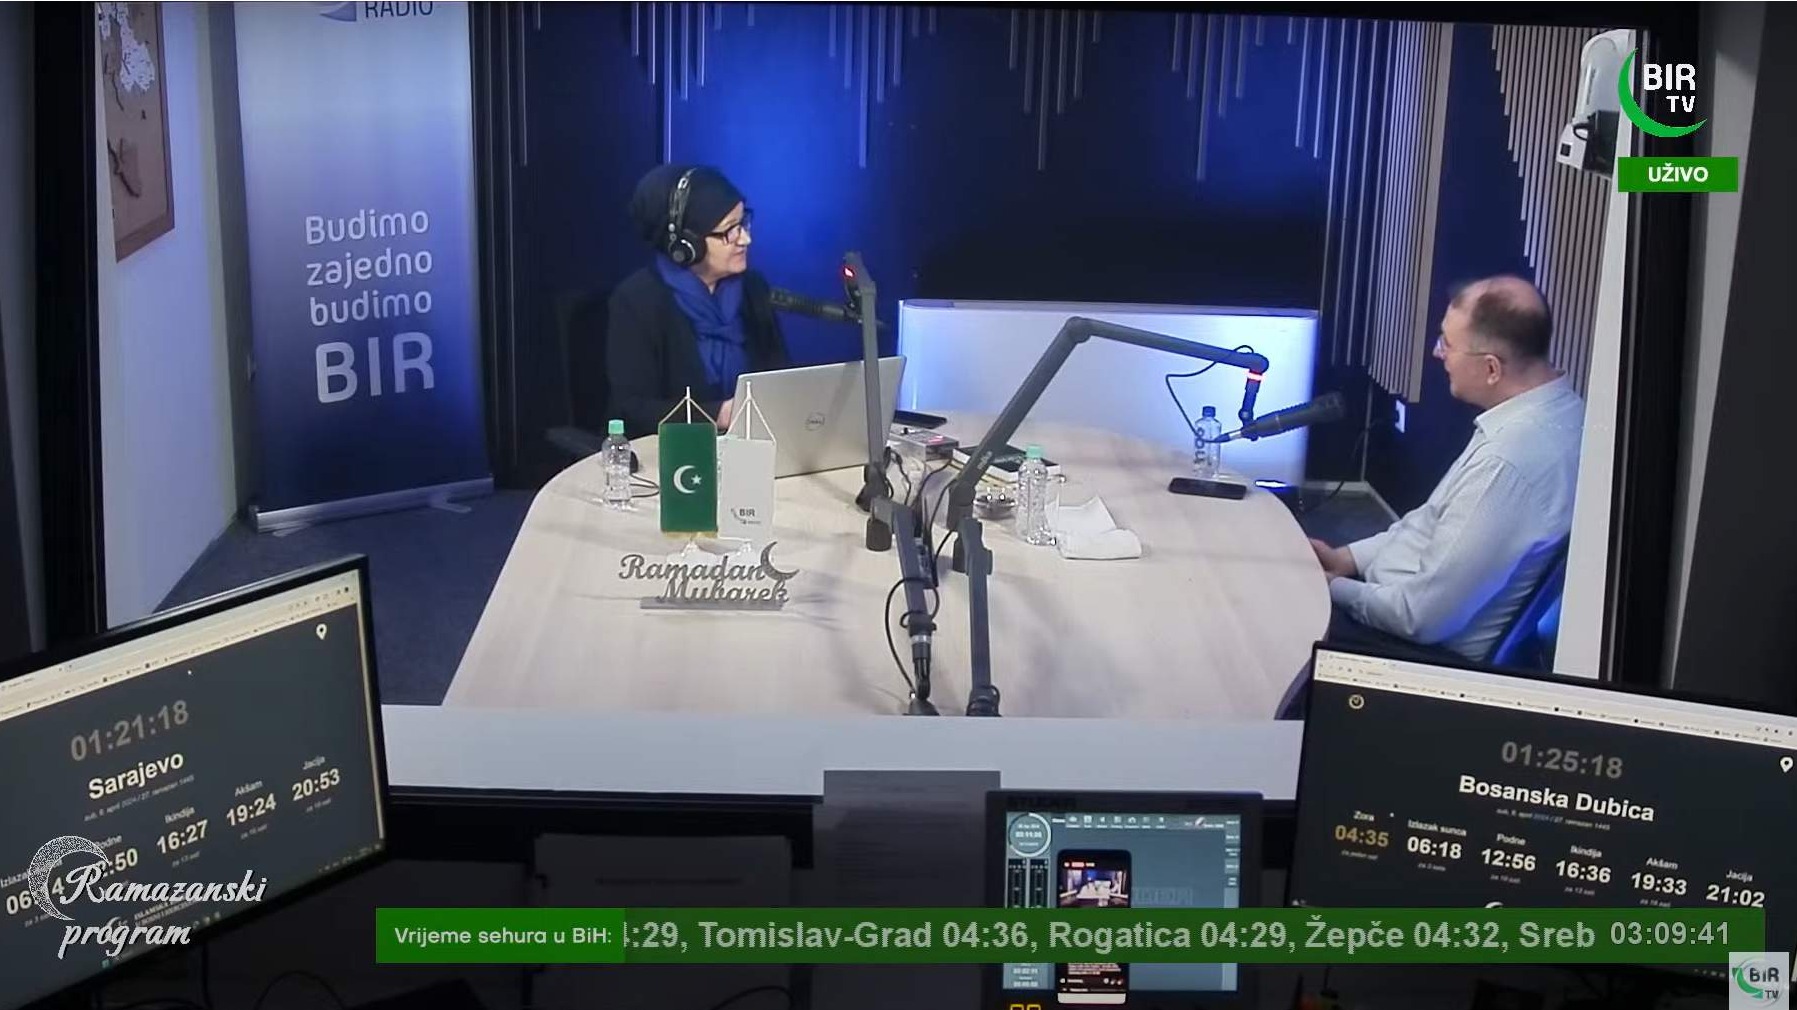 Sehurski program RTV BIR - O najodabranijoj noći Lejletul-kadr i njenim refleksijama u našim životima